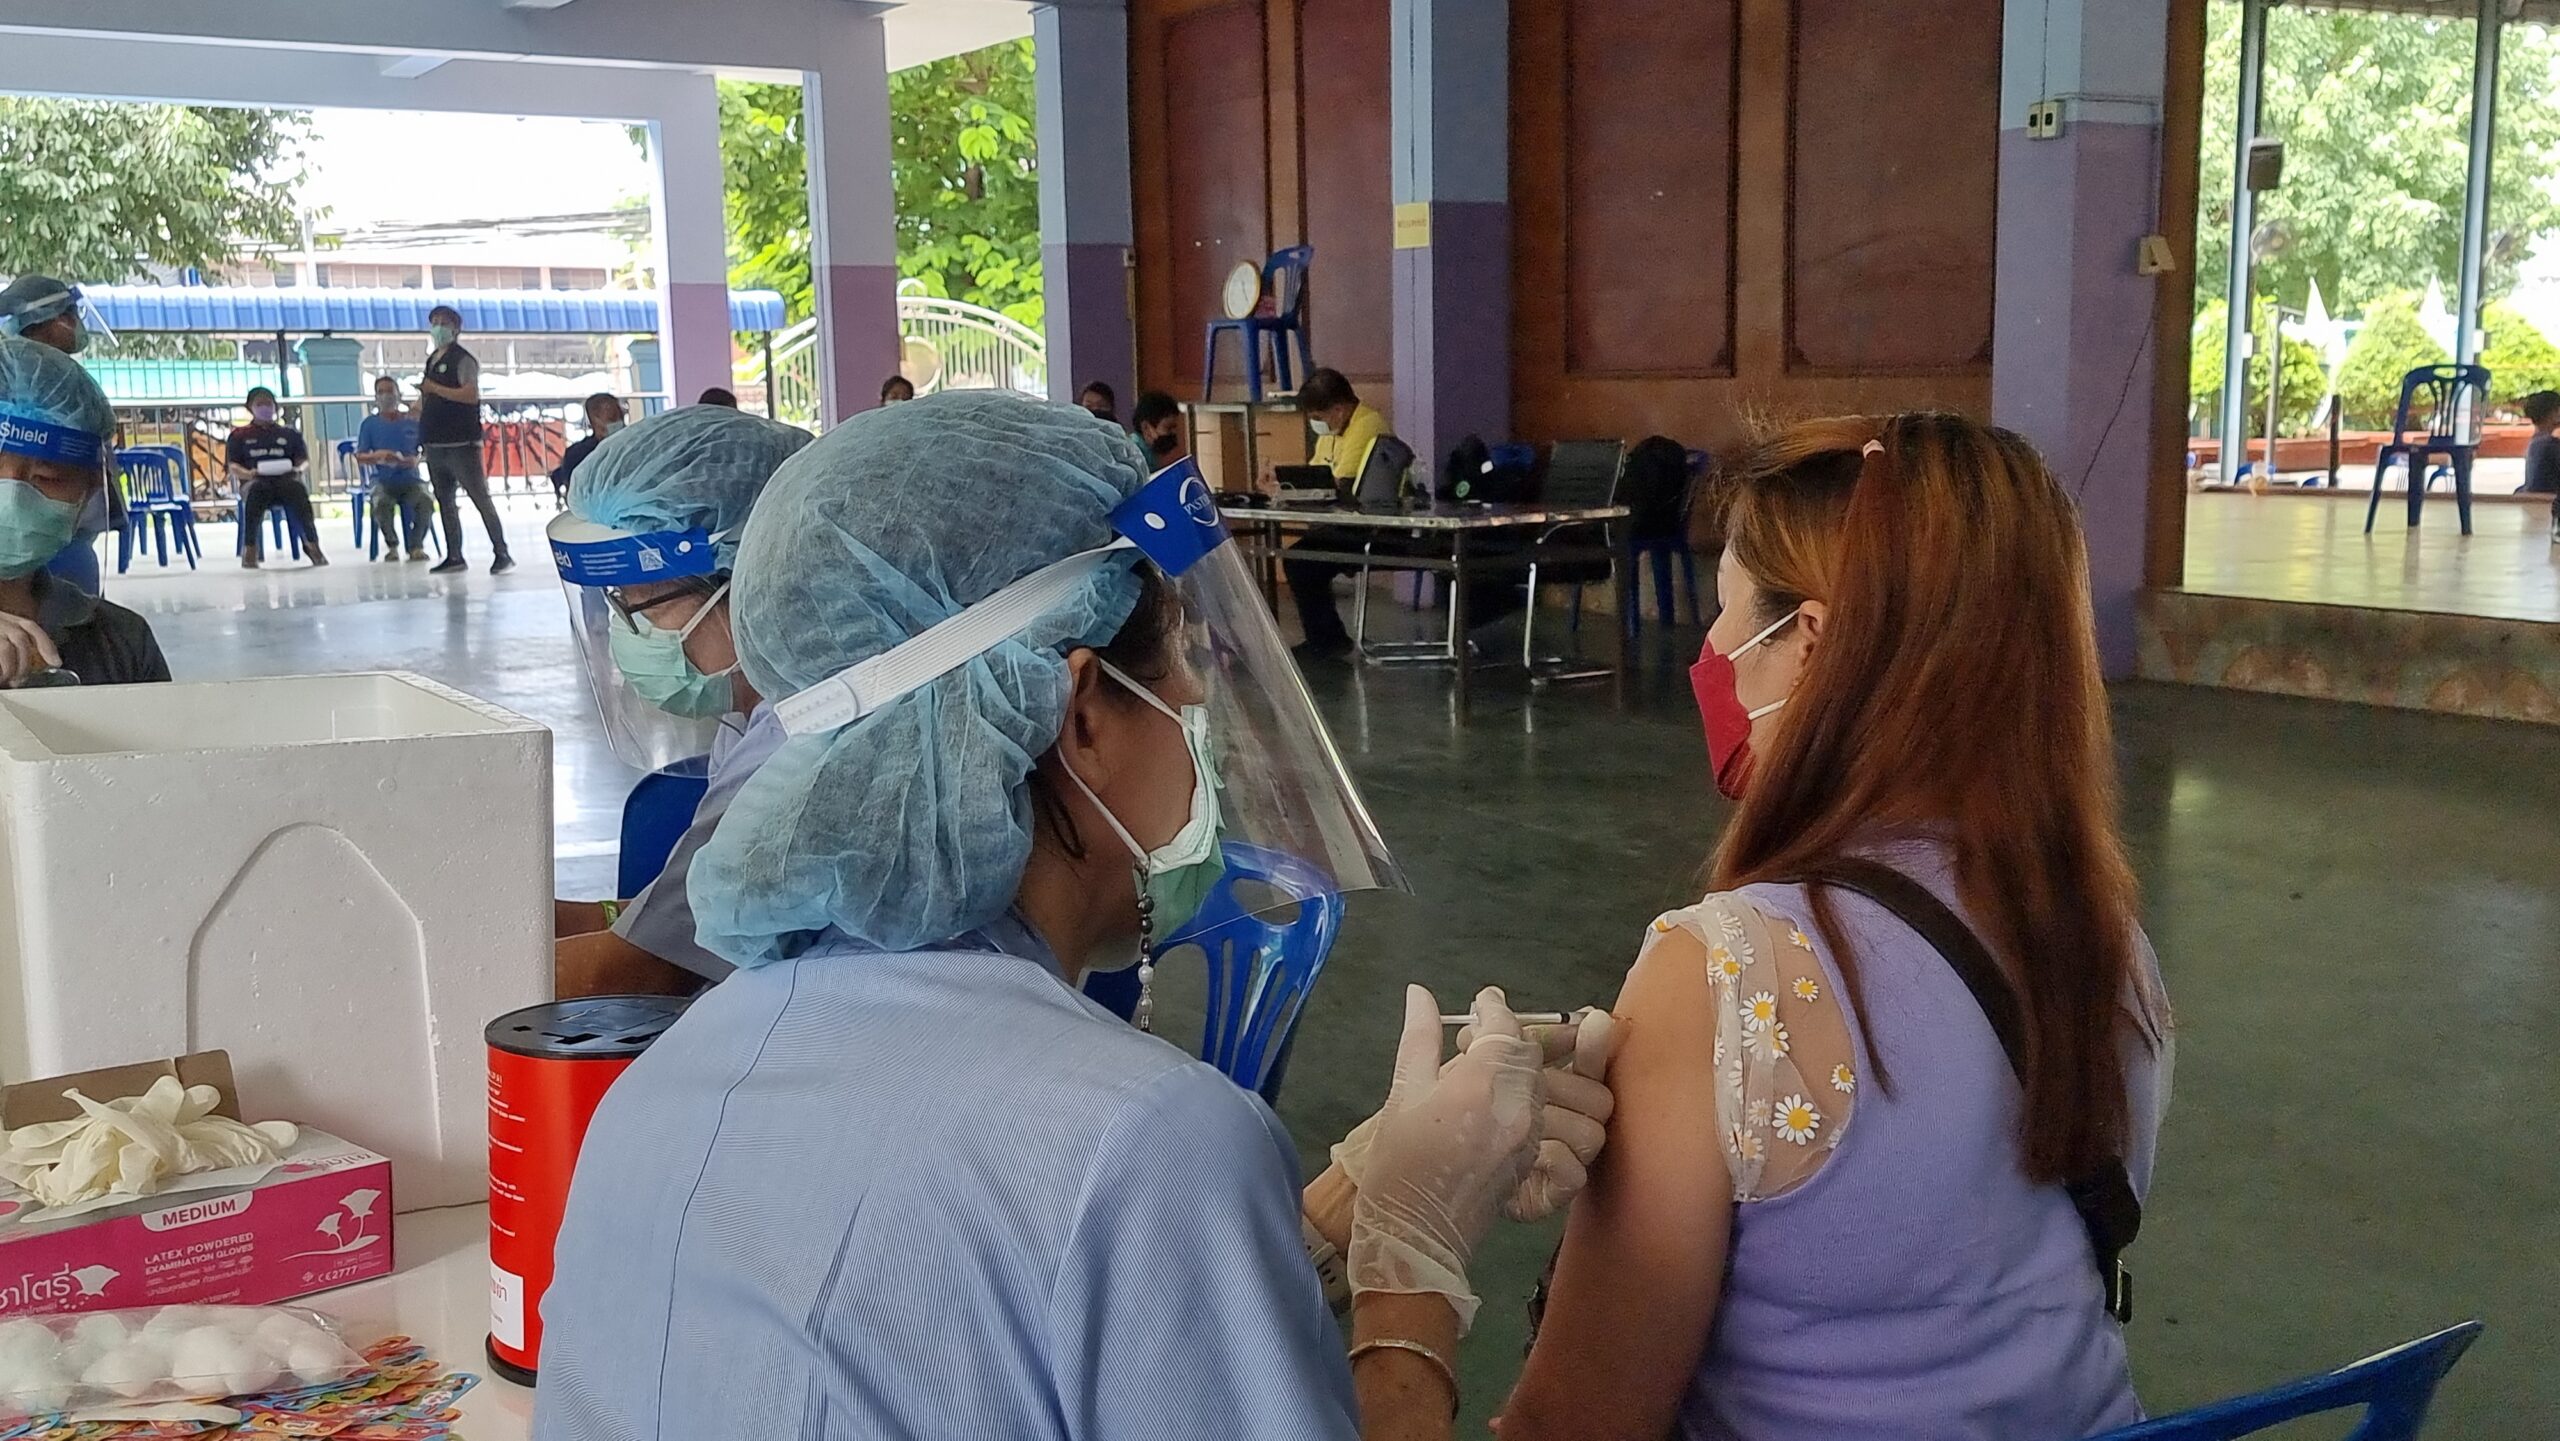 สสจ.สมุทรสาคร รุกฉีดวัคซีนครอบคลุมกลุ่มคนไทย จัดโมบายเคลื่อนที่เข้าหาชุมชน